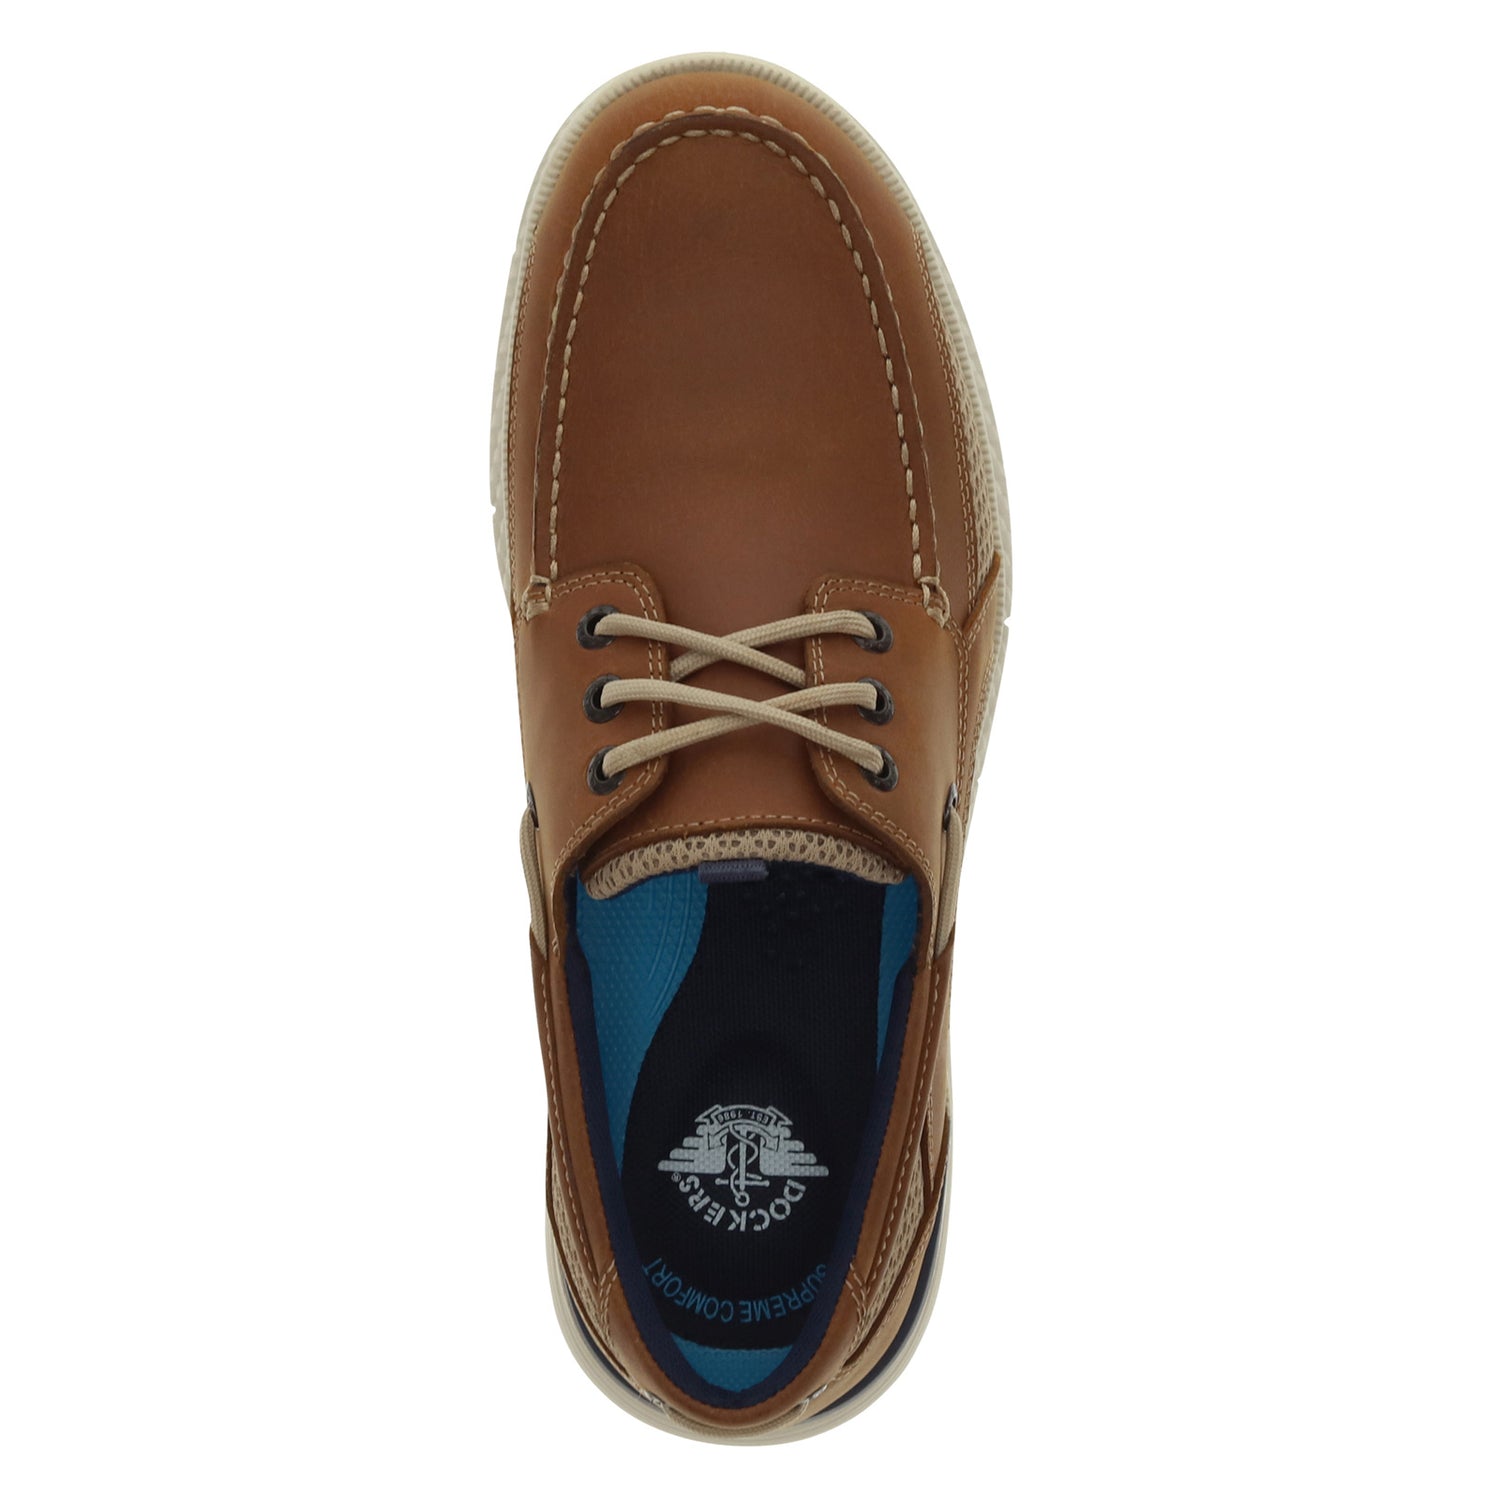 Peltz Shoes  Men's Dockers Harden Boat Shoe Tan 90-35262